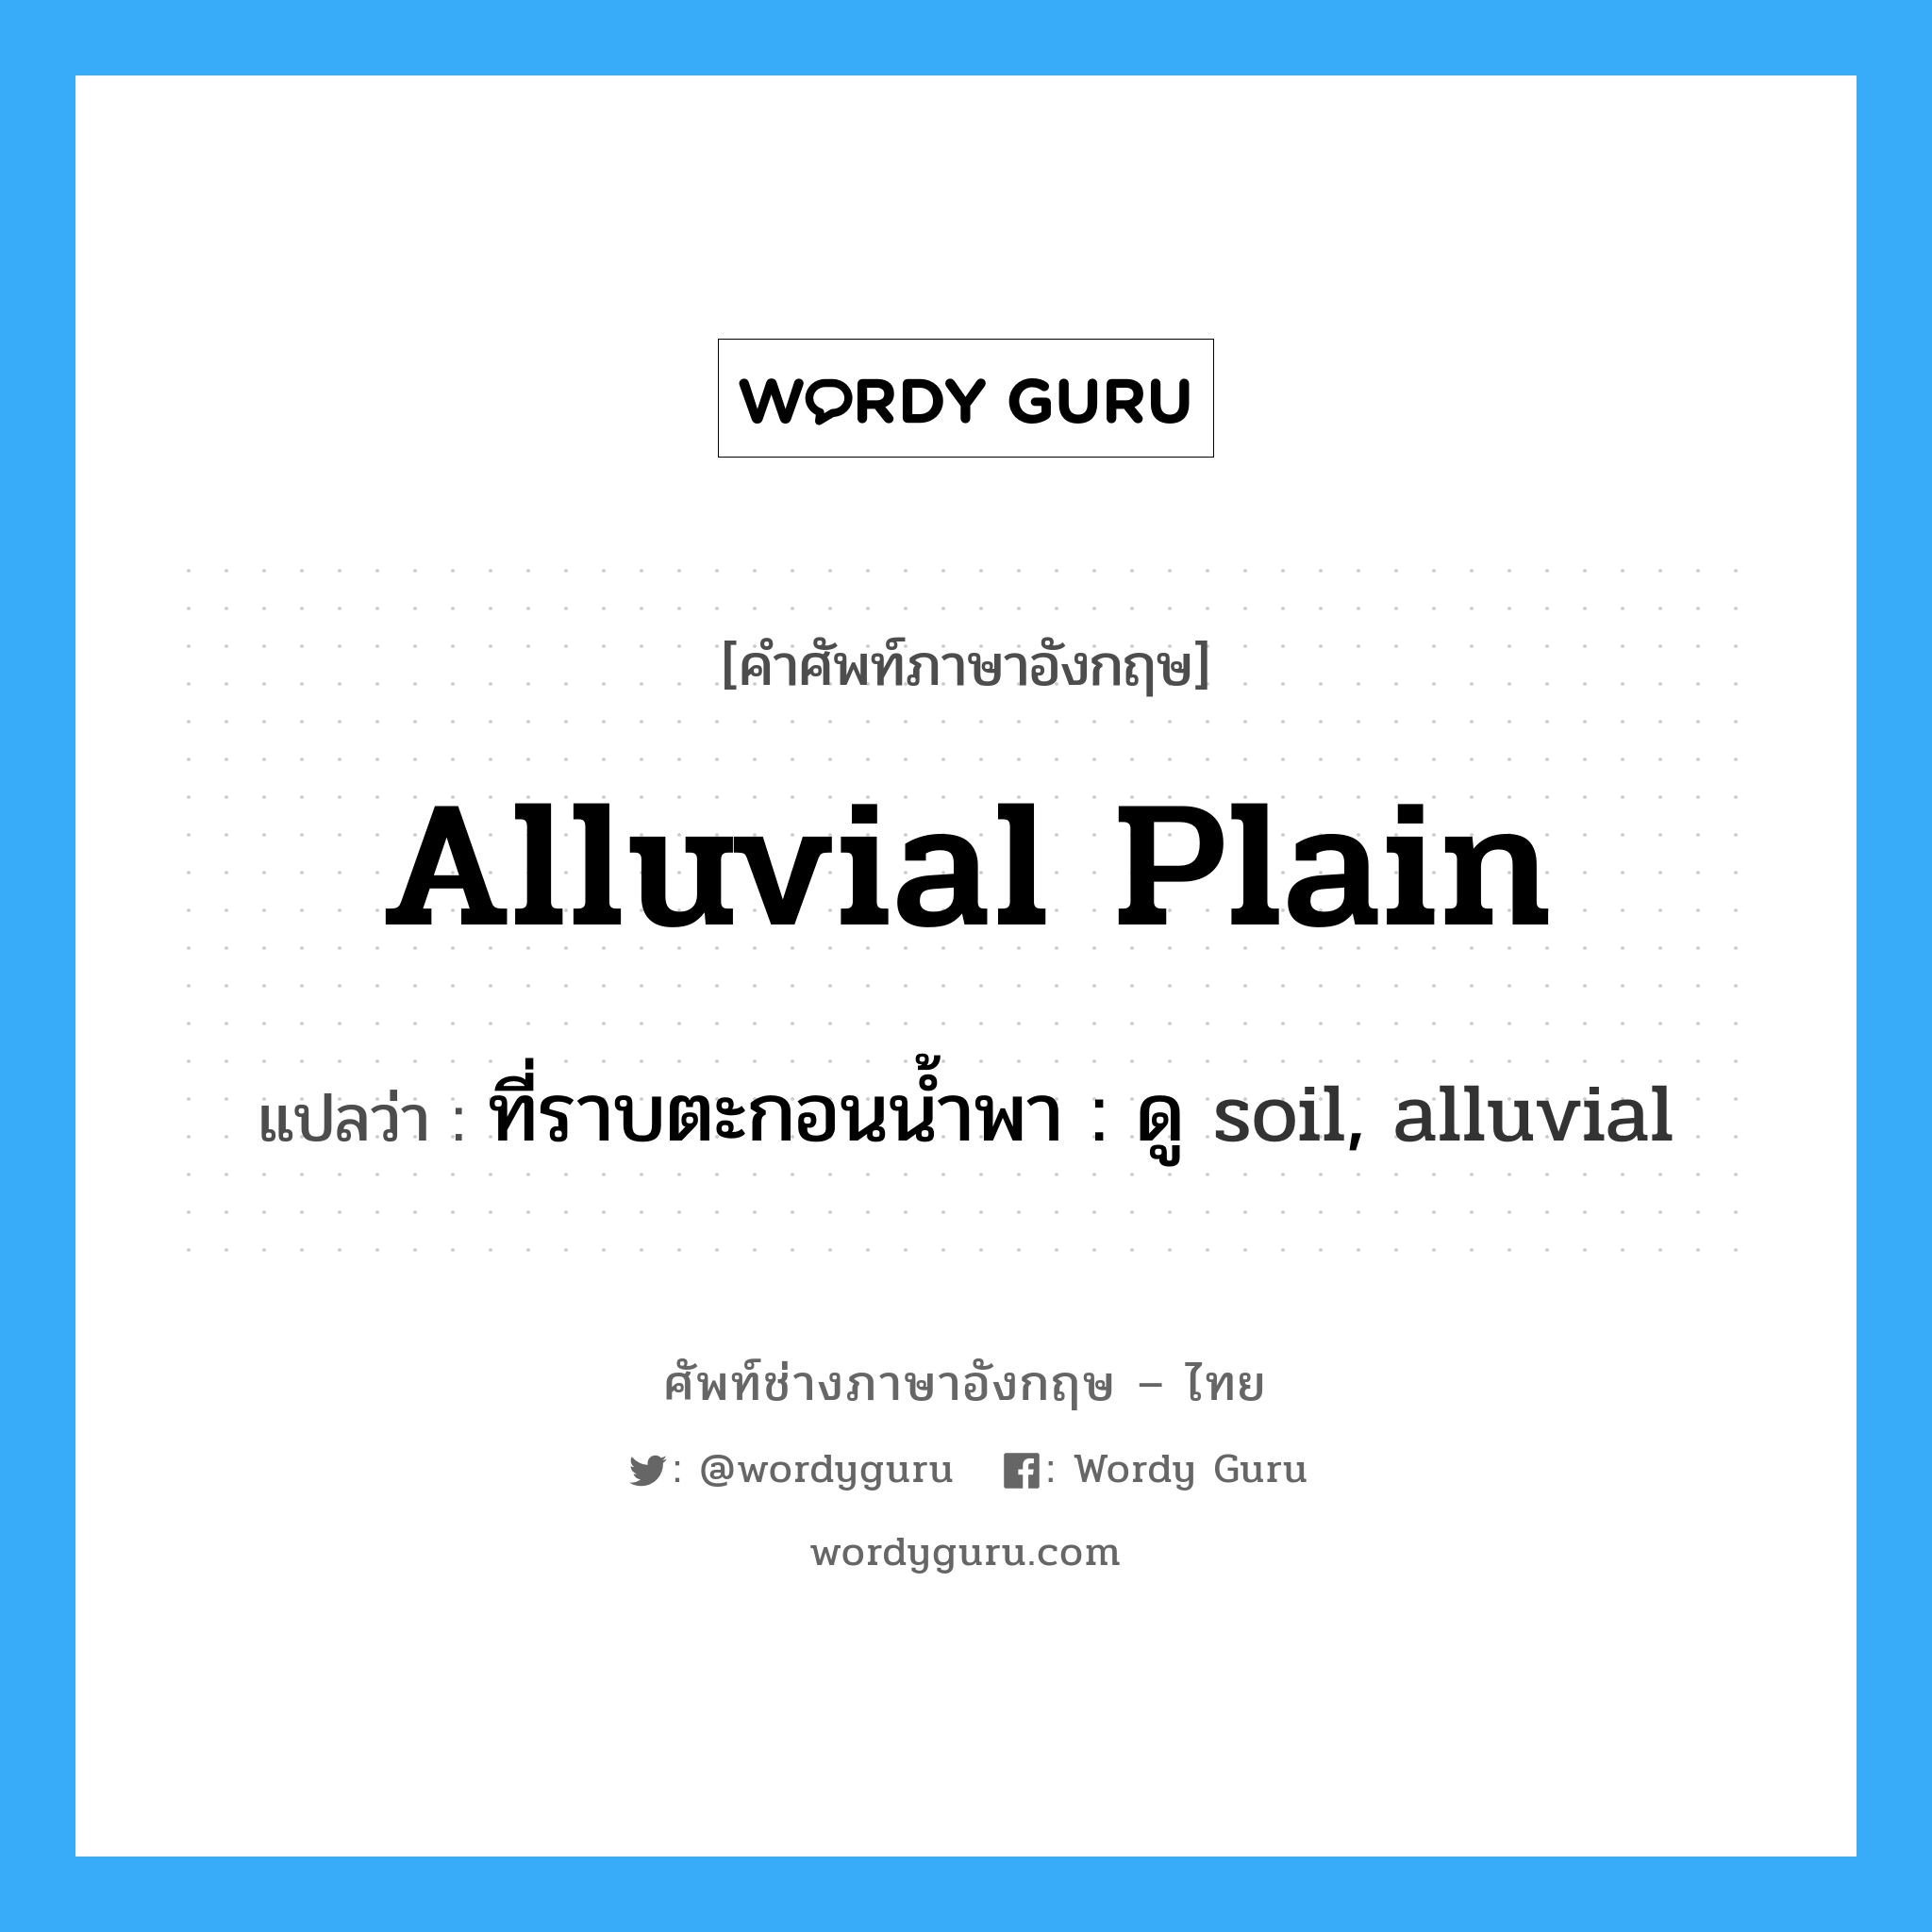 alluvial plain แปลว่า?, คำศัพท์ช่างภาษาอังกฤษ - ไทย alluvial plain คำศัพท์ภาษาอังกฤษ alluvial plain แปลว่า ที่ราบตะกอนน้ำพา : ดู soil, alluvial